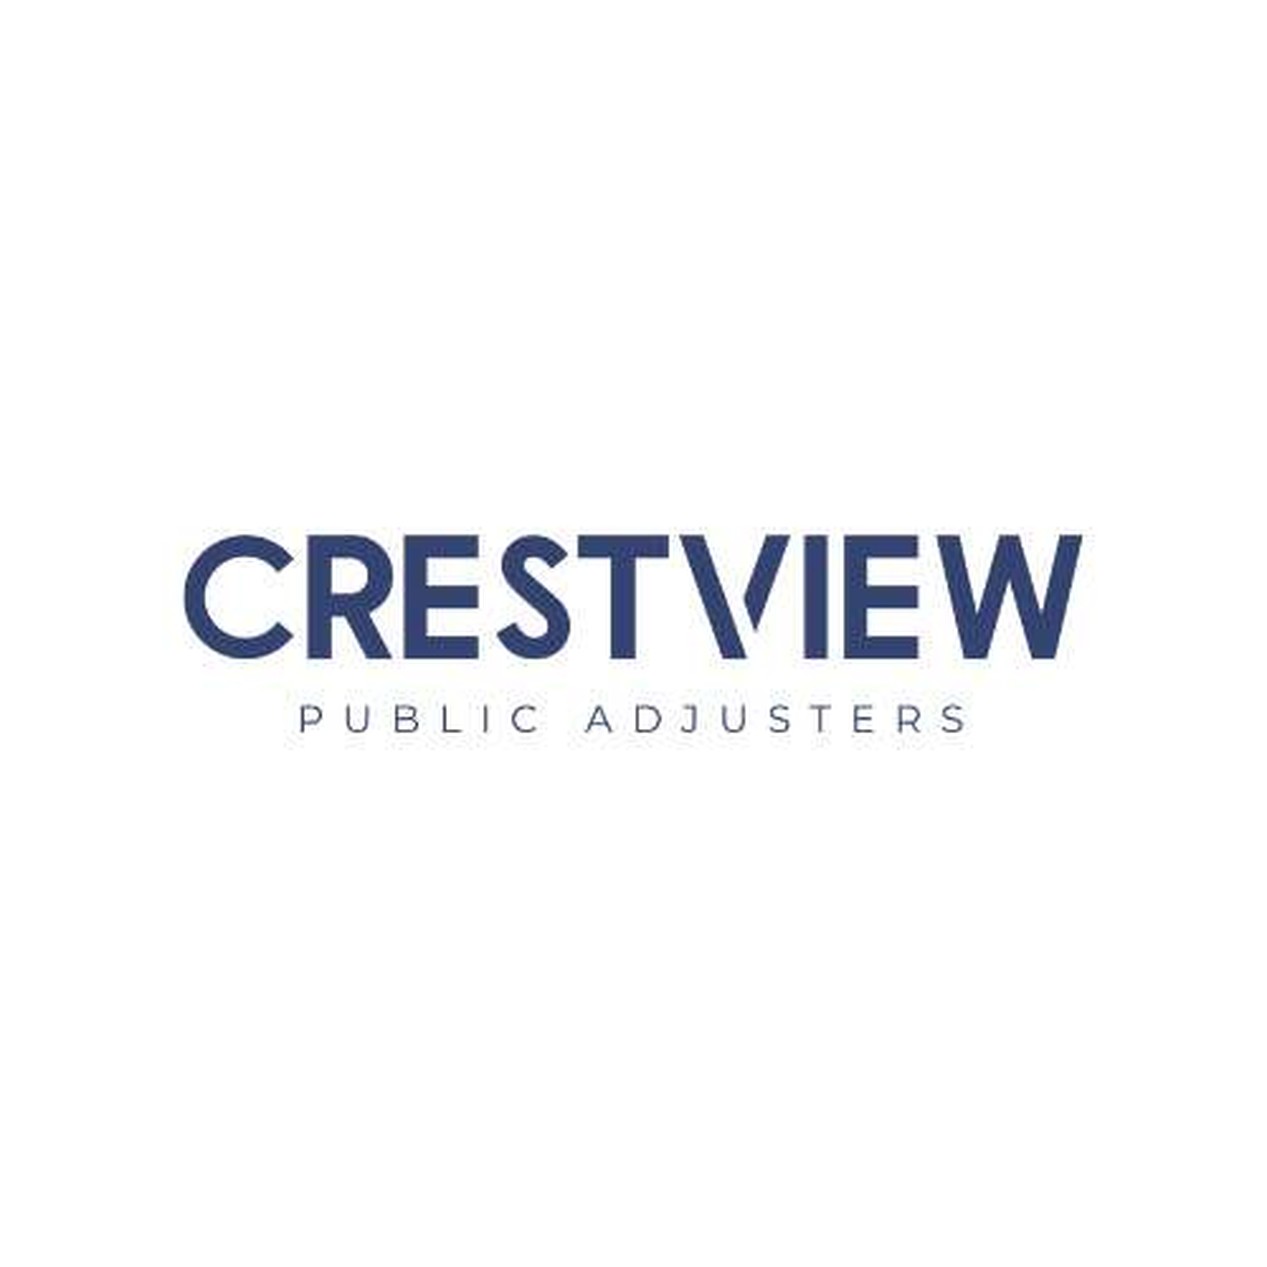 Crestview Public Adjusters